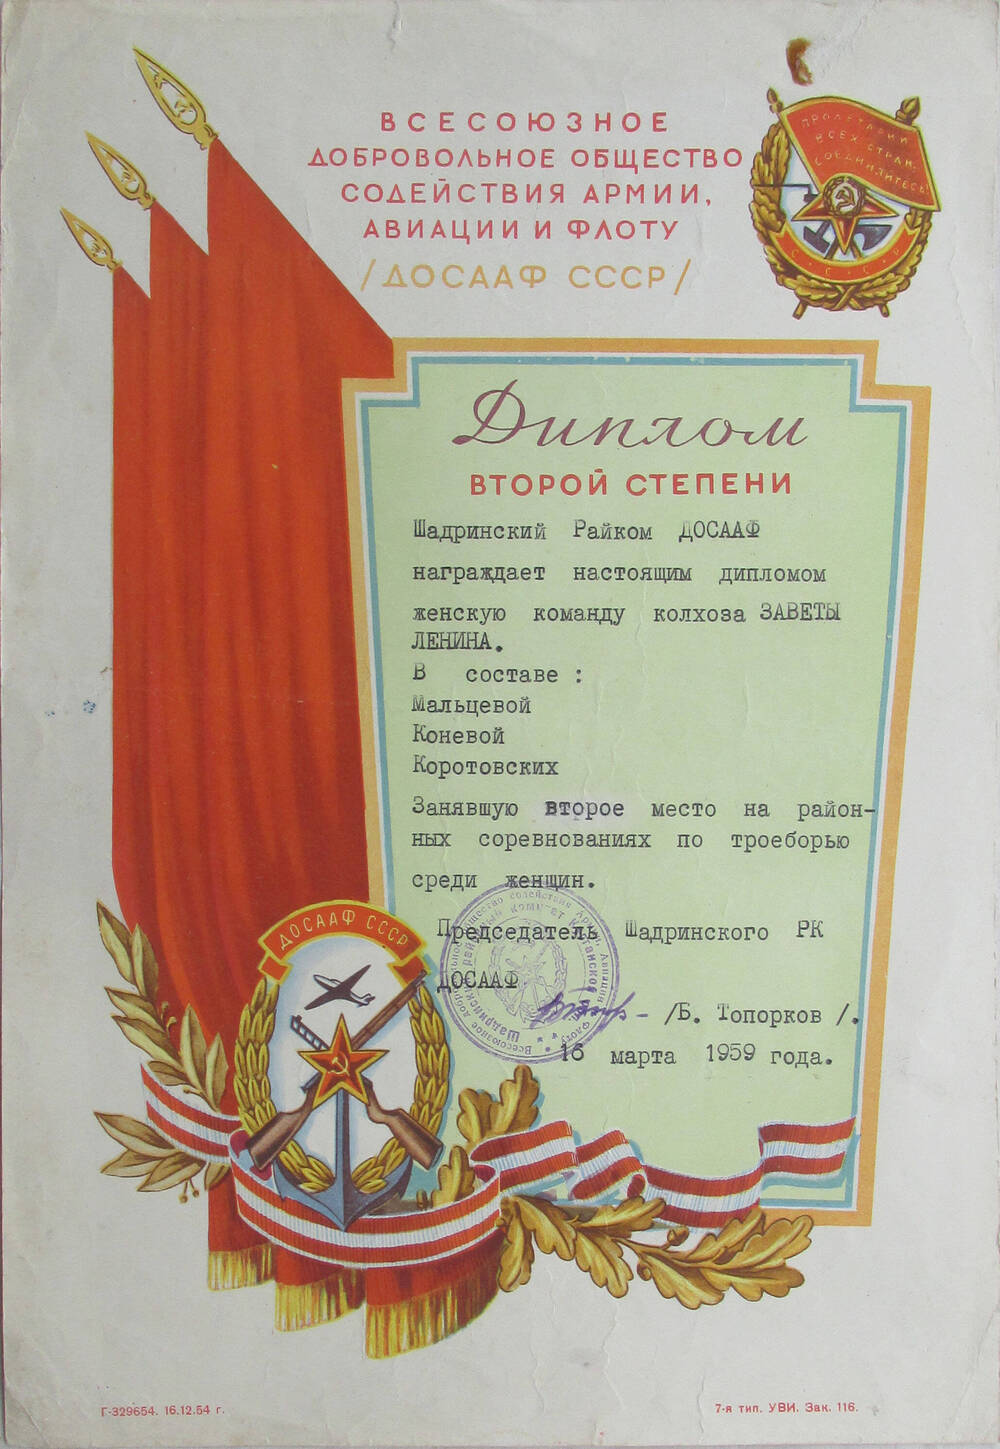 Диплом  второй степени Шадринского райкома ДОСААФ женской команде колхоза Заветы Ленина. 16 марта 1959 г.